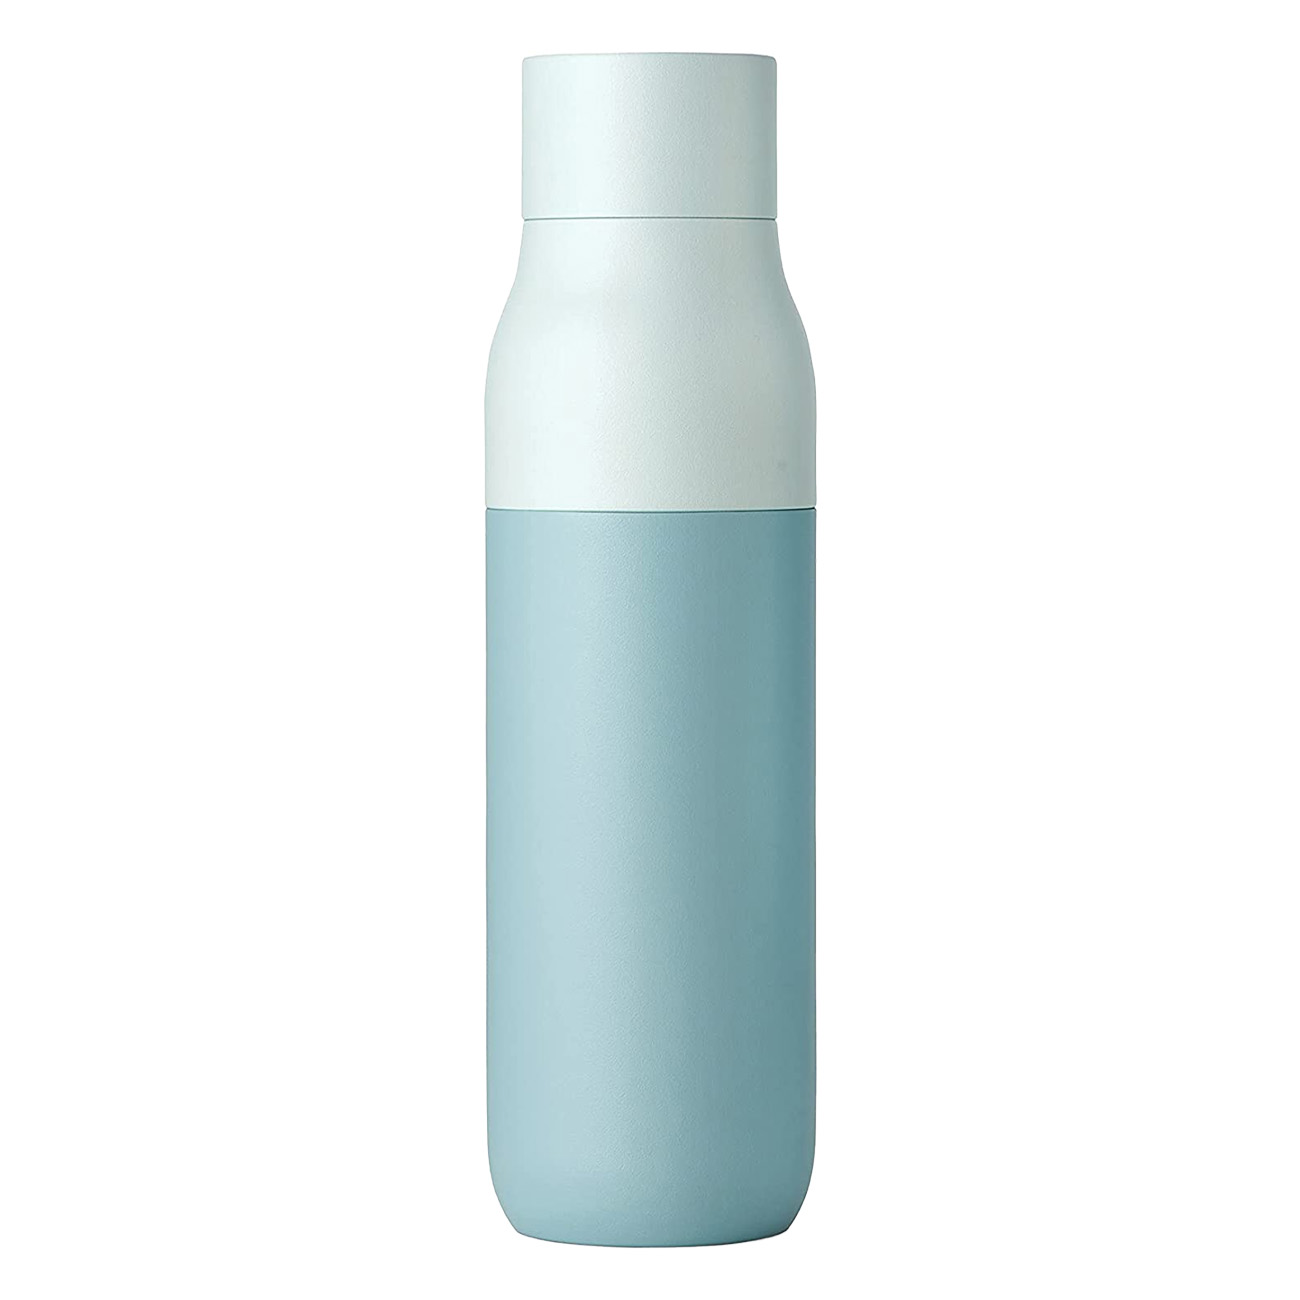 LARQ Non-PureVis Bottle Trinkflasche